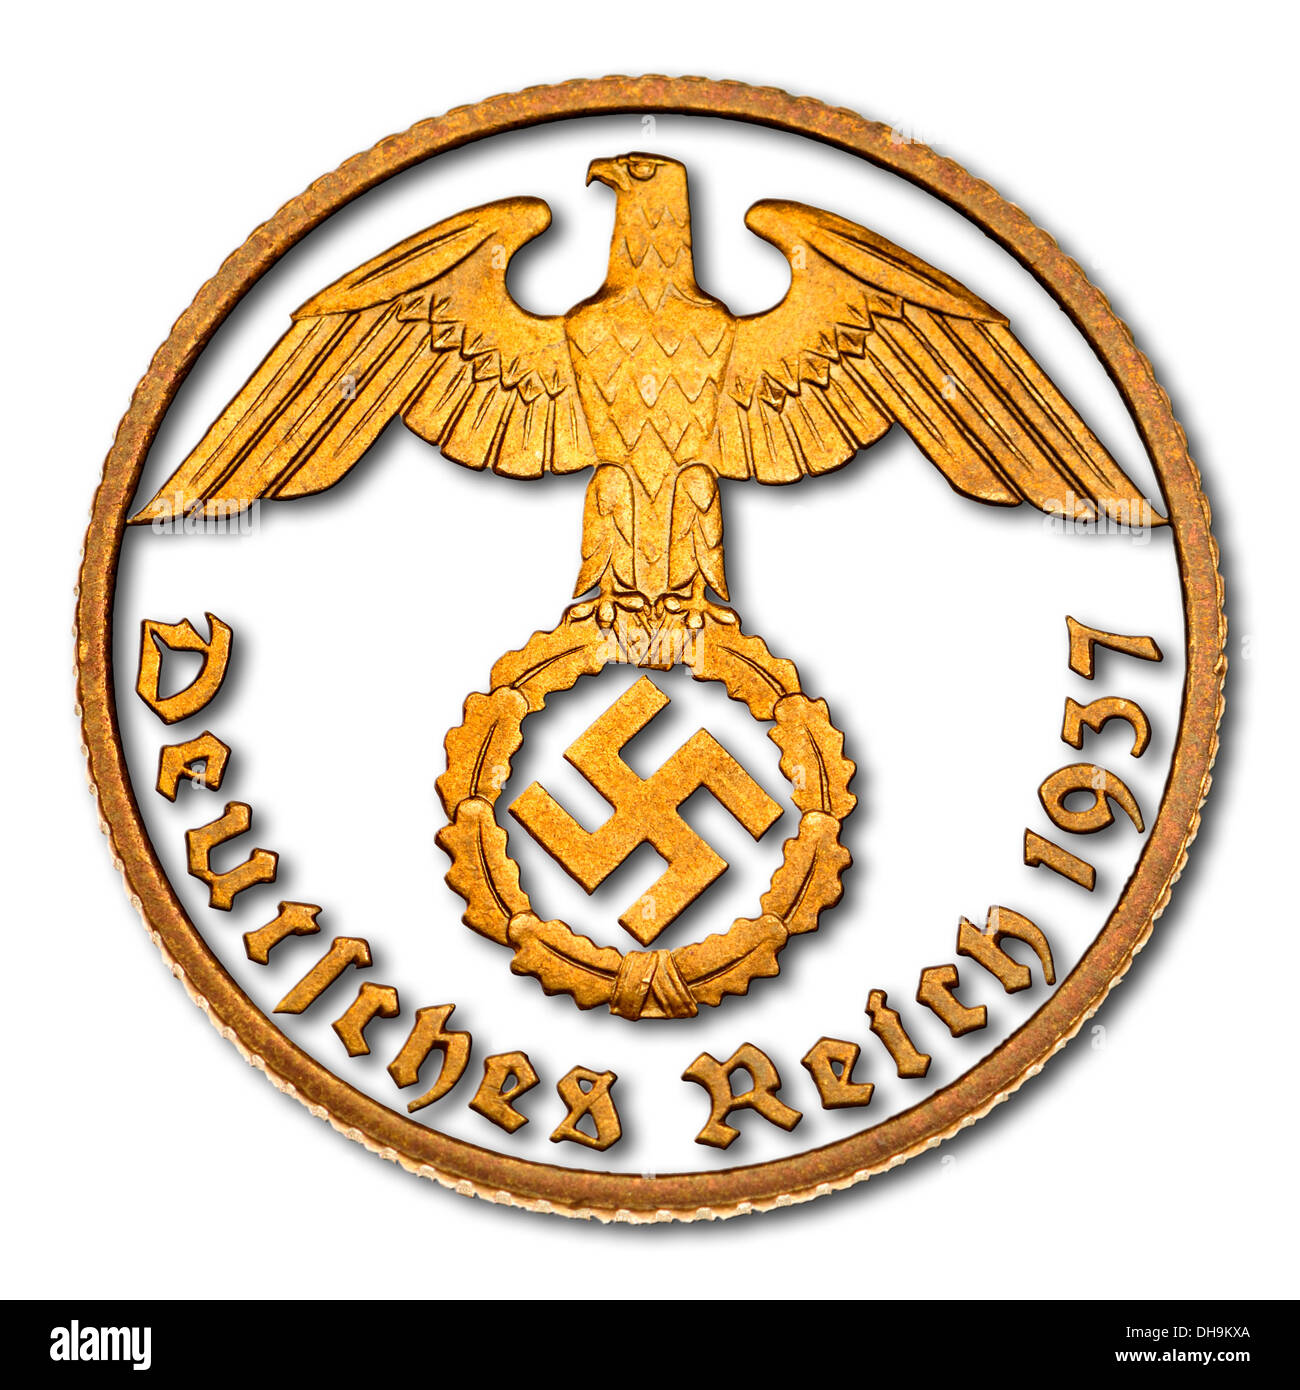 L'allemand 10pf coin à partir de 1937 avec l'Aigle et croix gammée. Détails découper avec ombre portée Banque D'Images